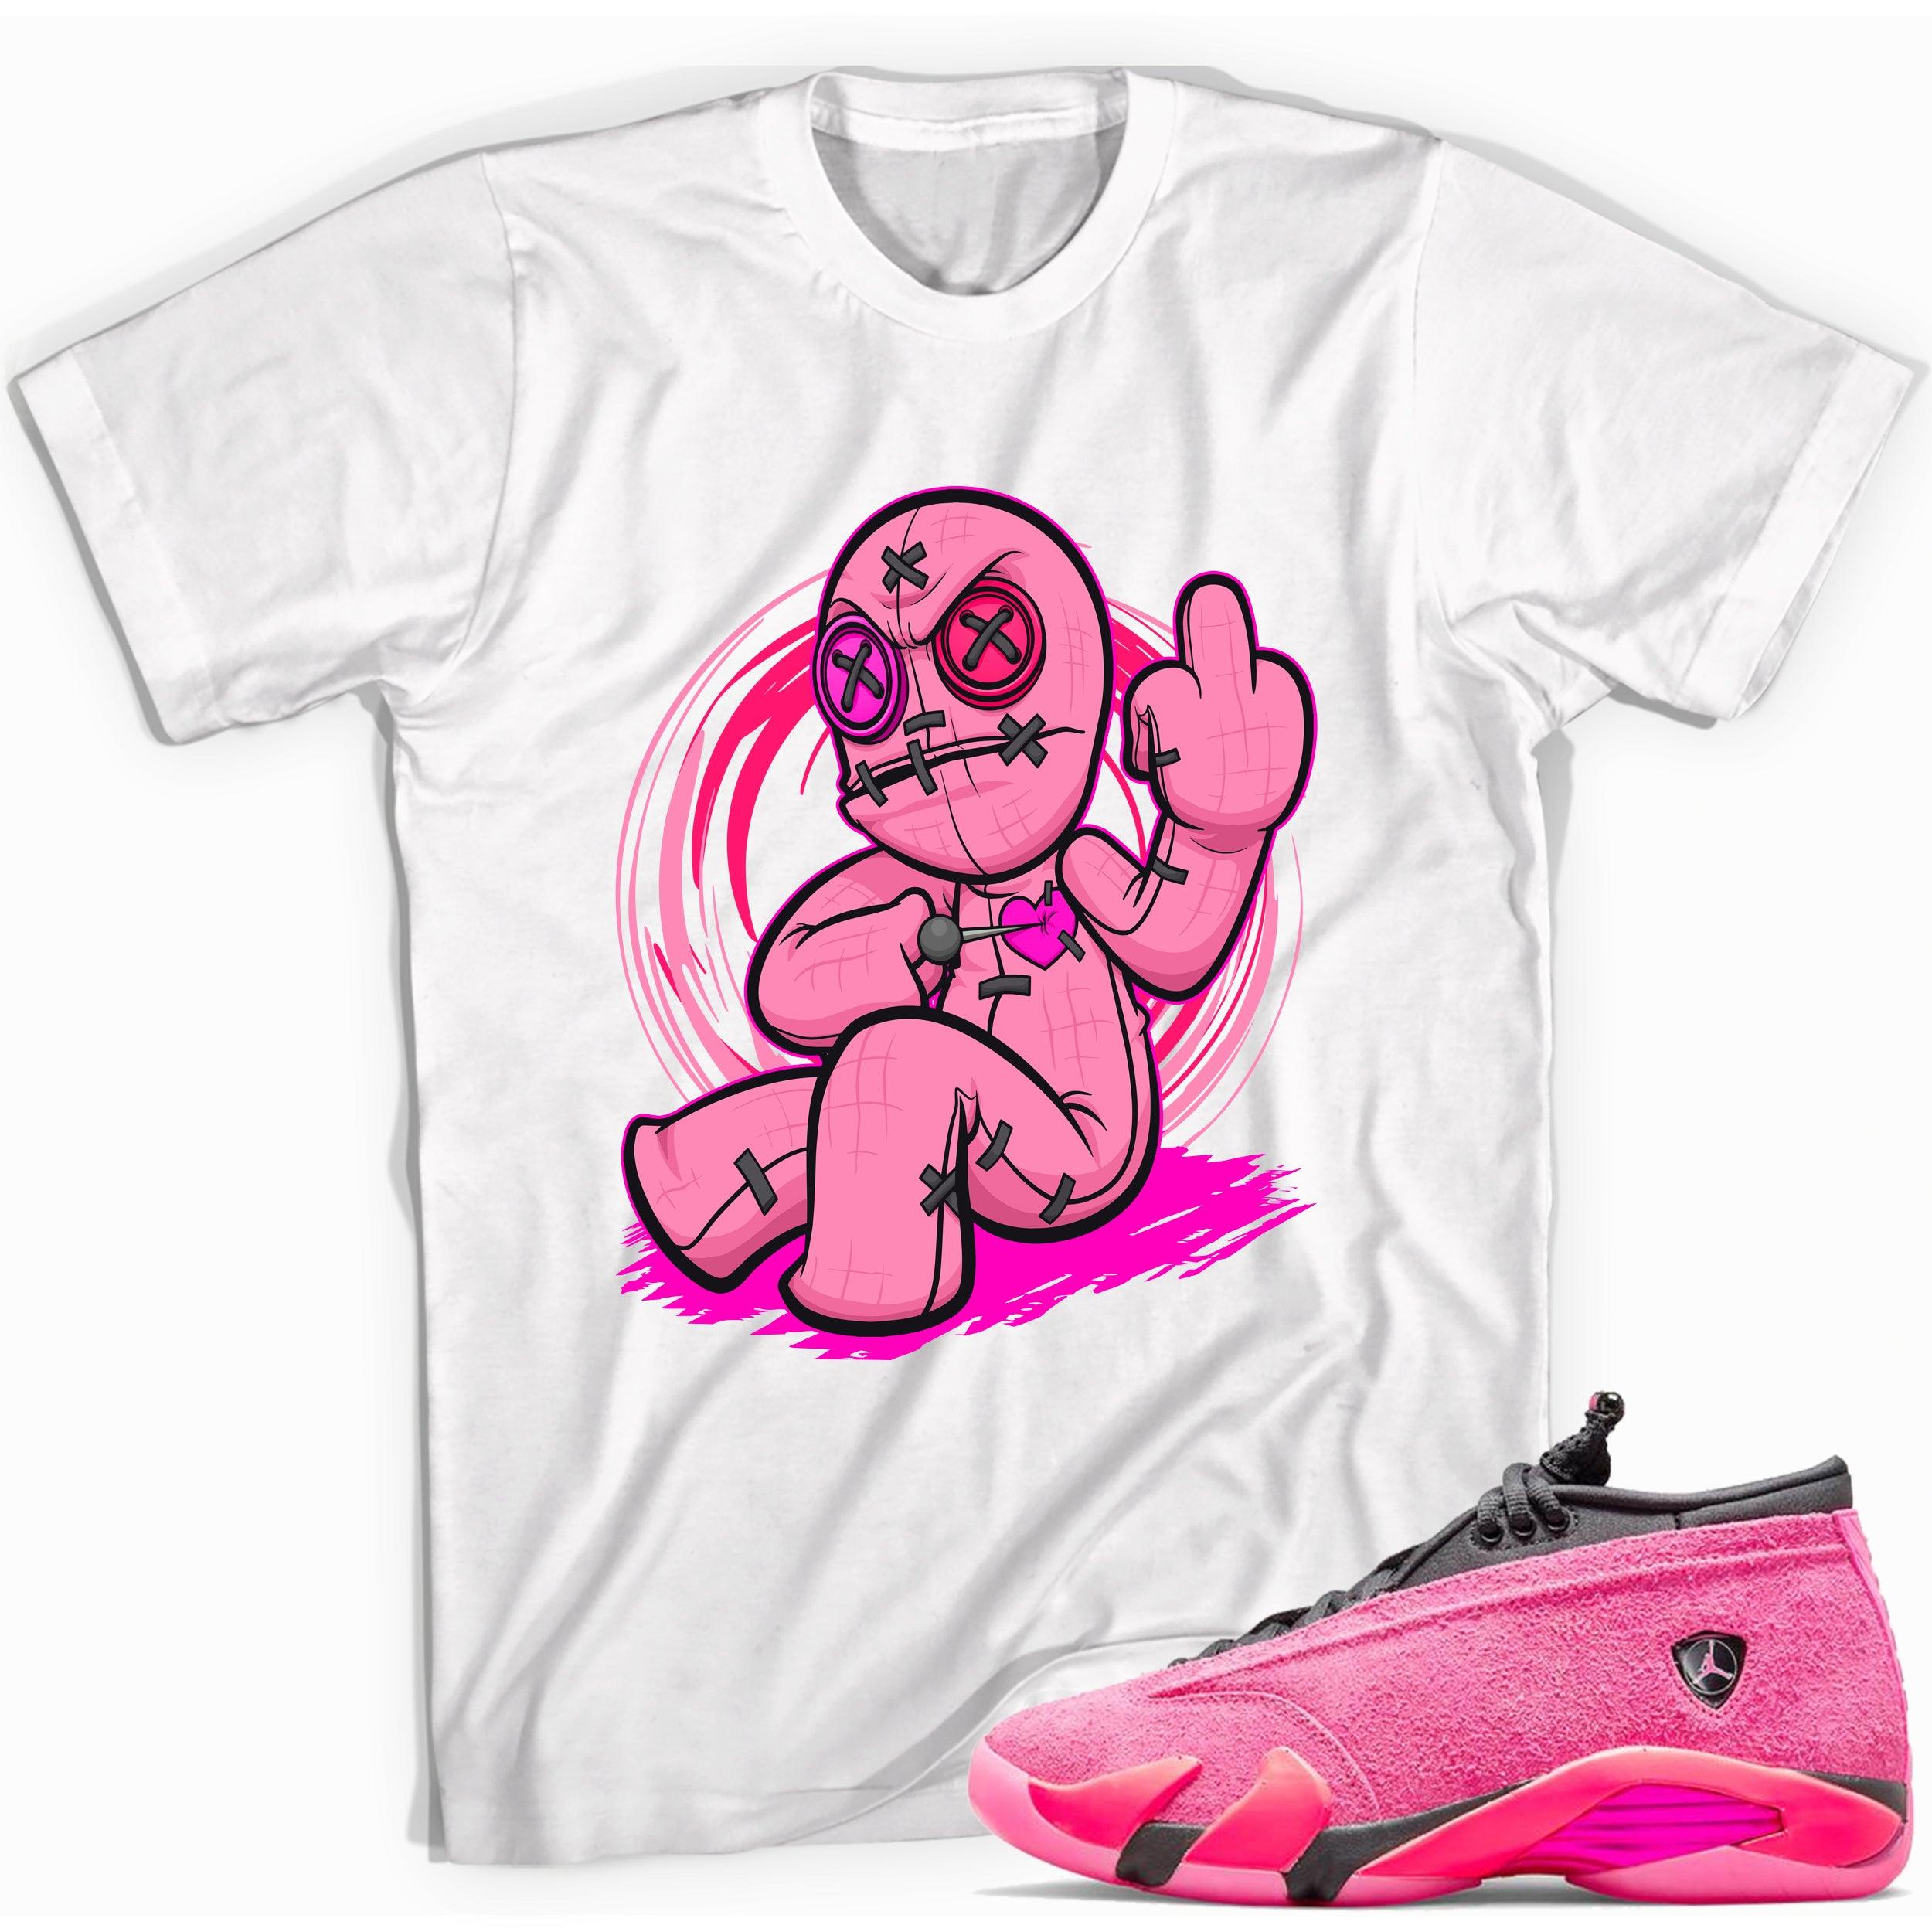 Voodoo Doll Shirt Jordan 14 Shocking Pink photo